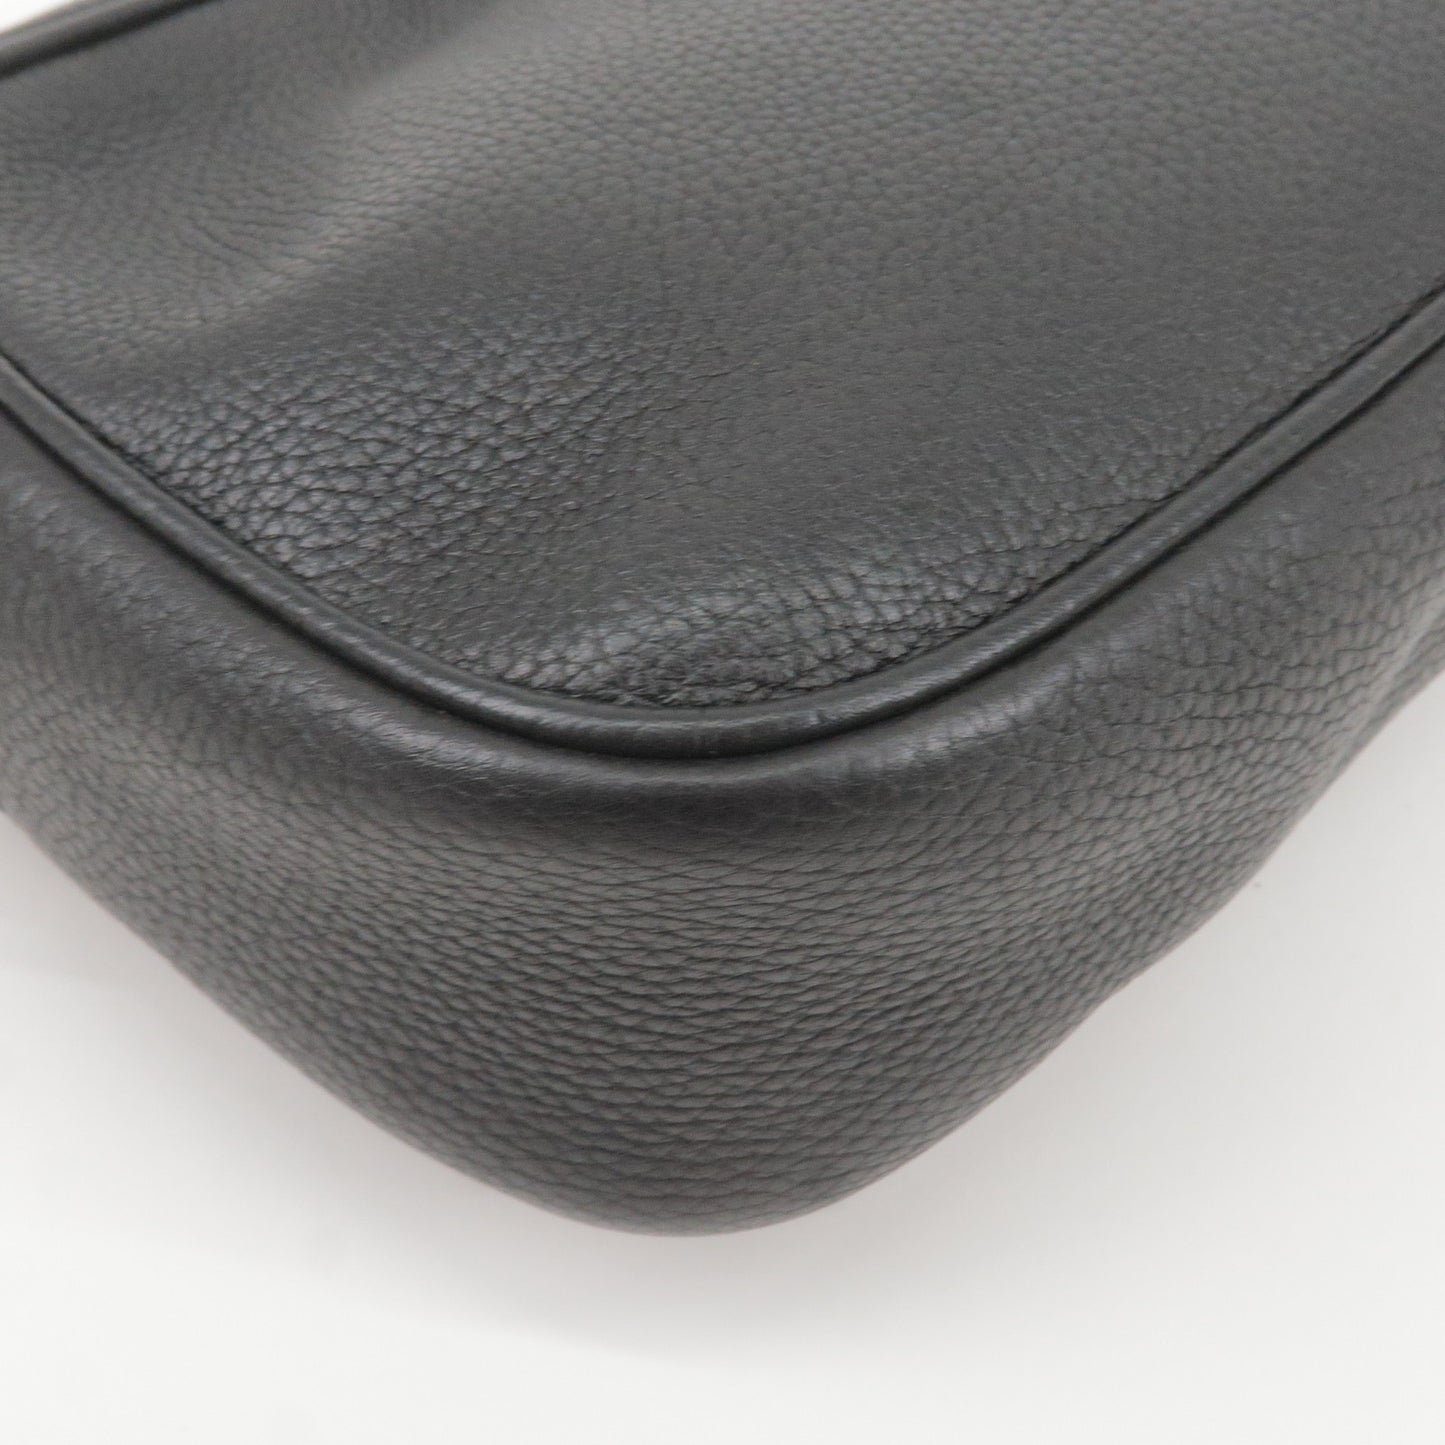 GUCCI SOHO Leather Shoulder Bag Black 308364